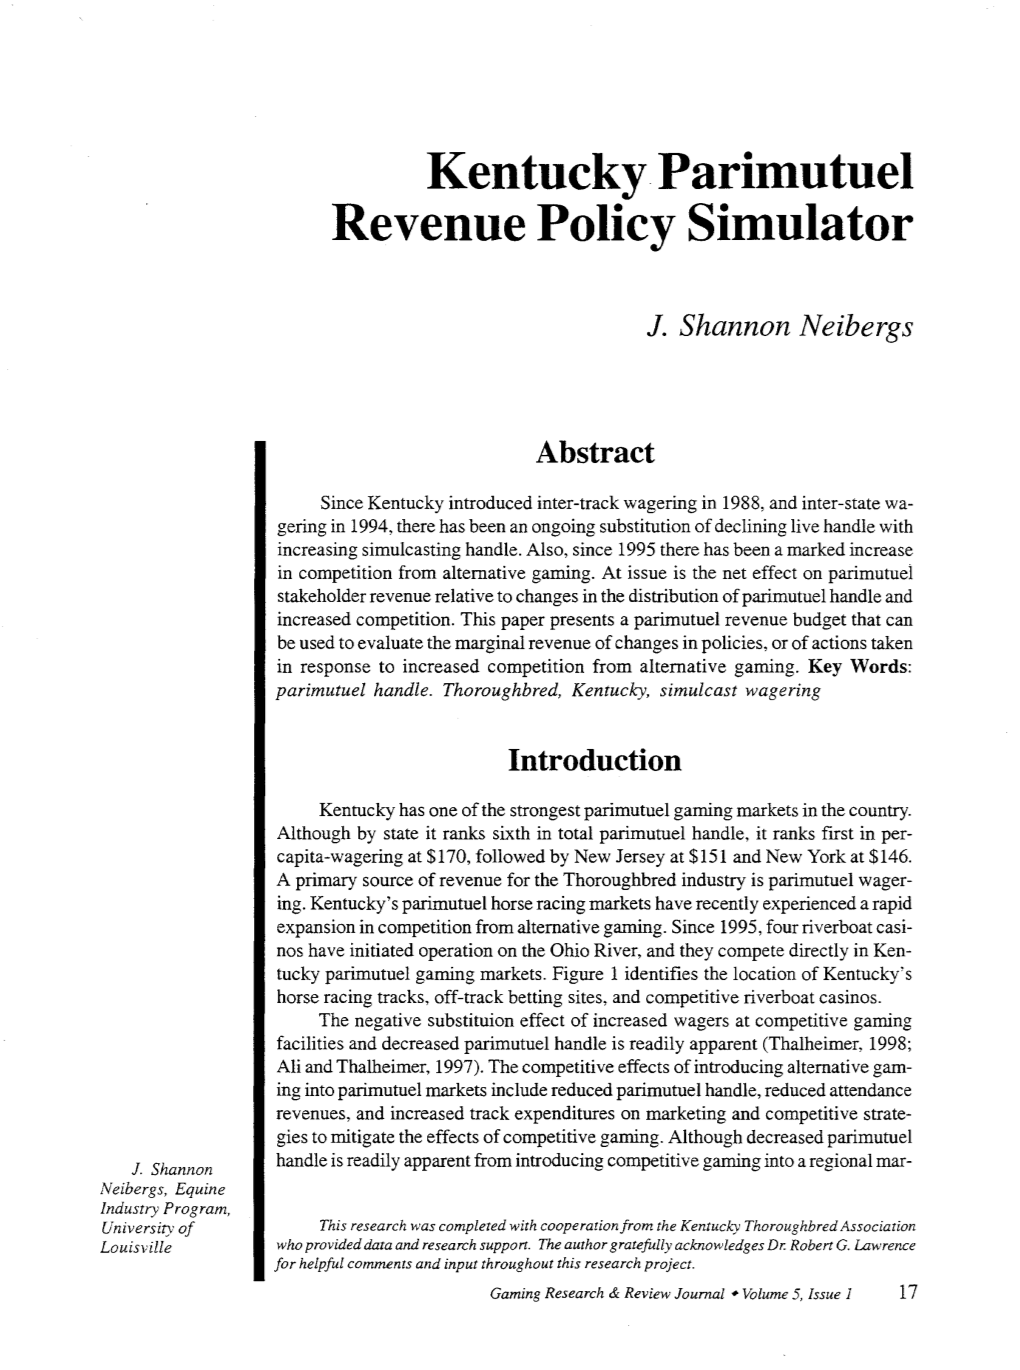 Kentucky Parimutuel Revenue Policy Simulator